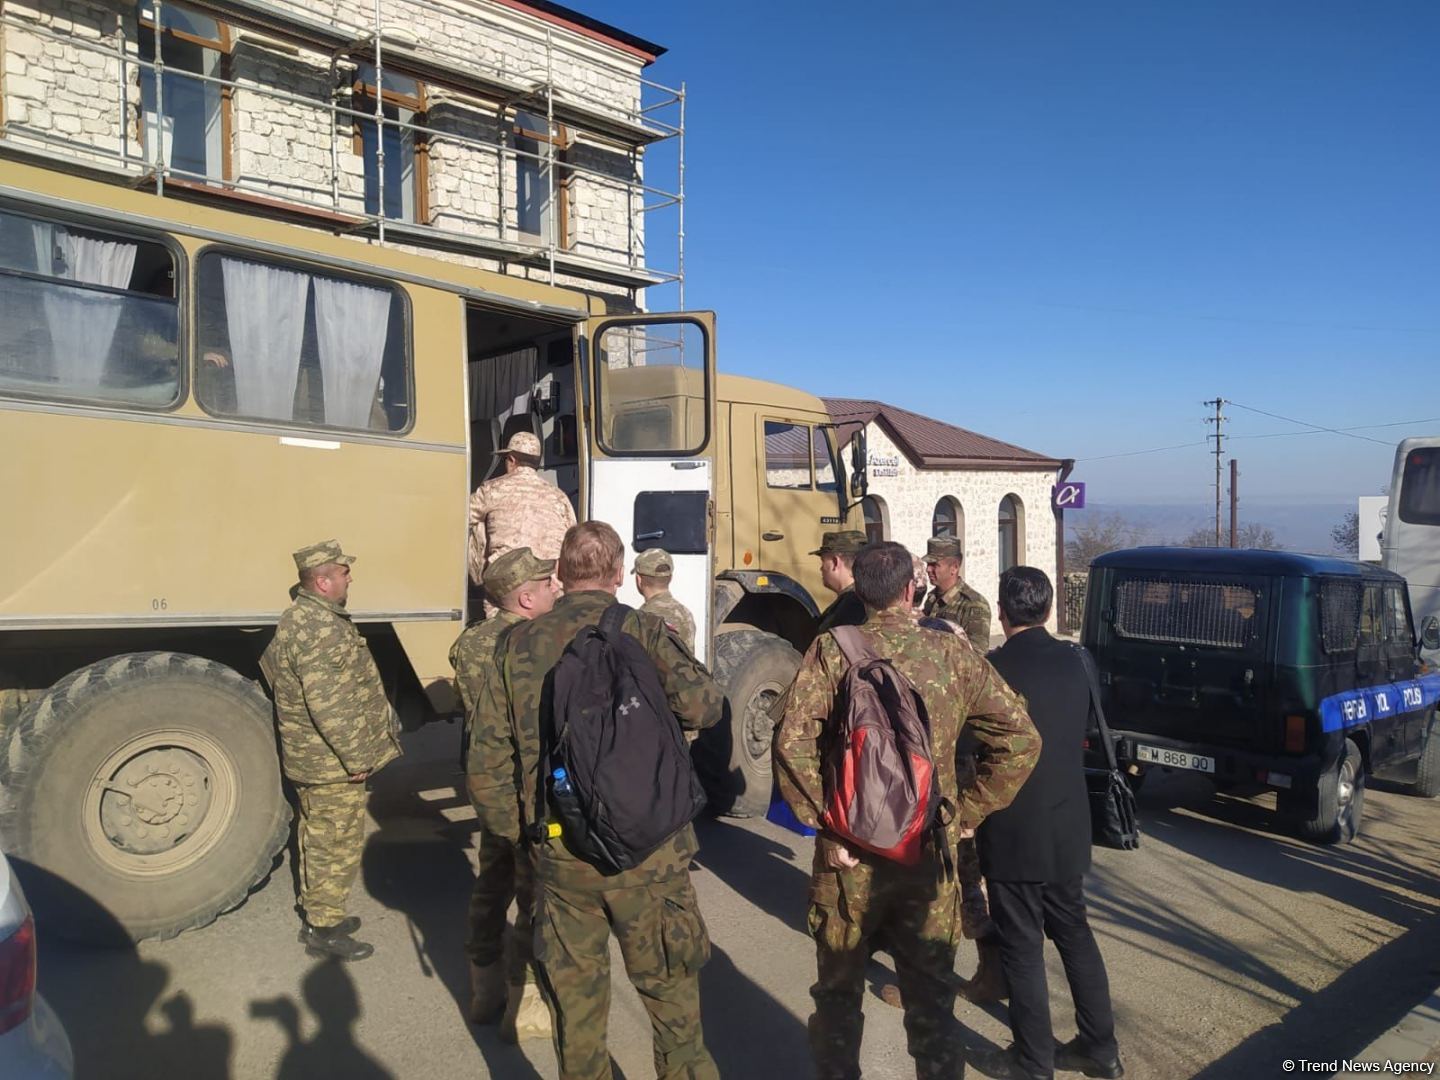 Hərbi attaşelər və media nümayəndələri Sarıbaba istiqamətində mina sahəsinə baxış keçiriblər (FOTO) (ƏLAVƏ OLUNUB)